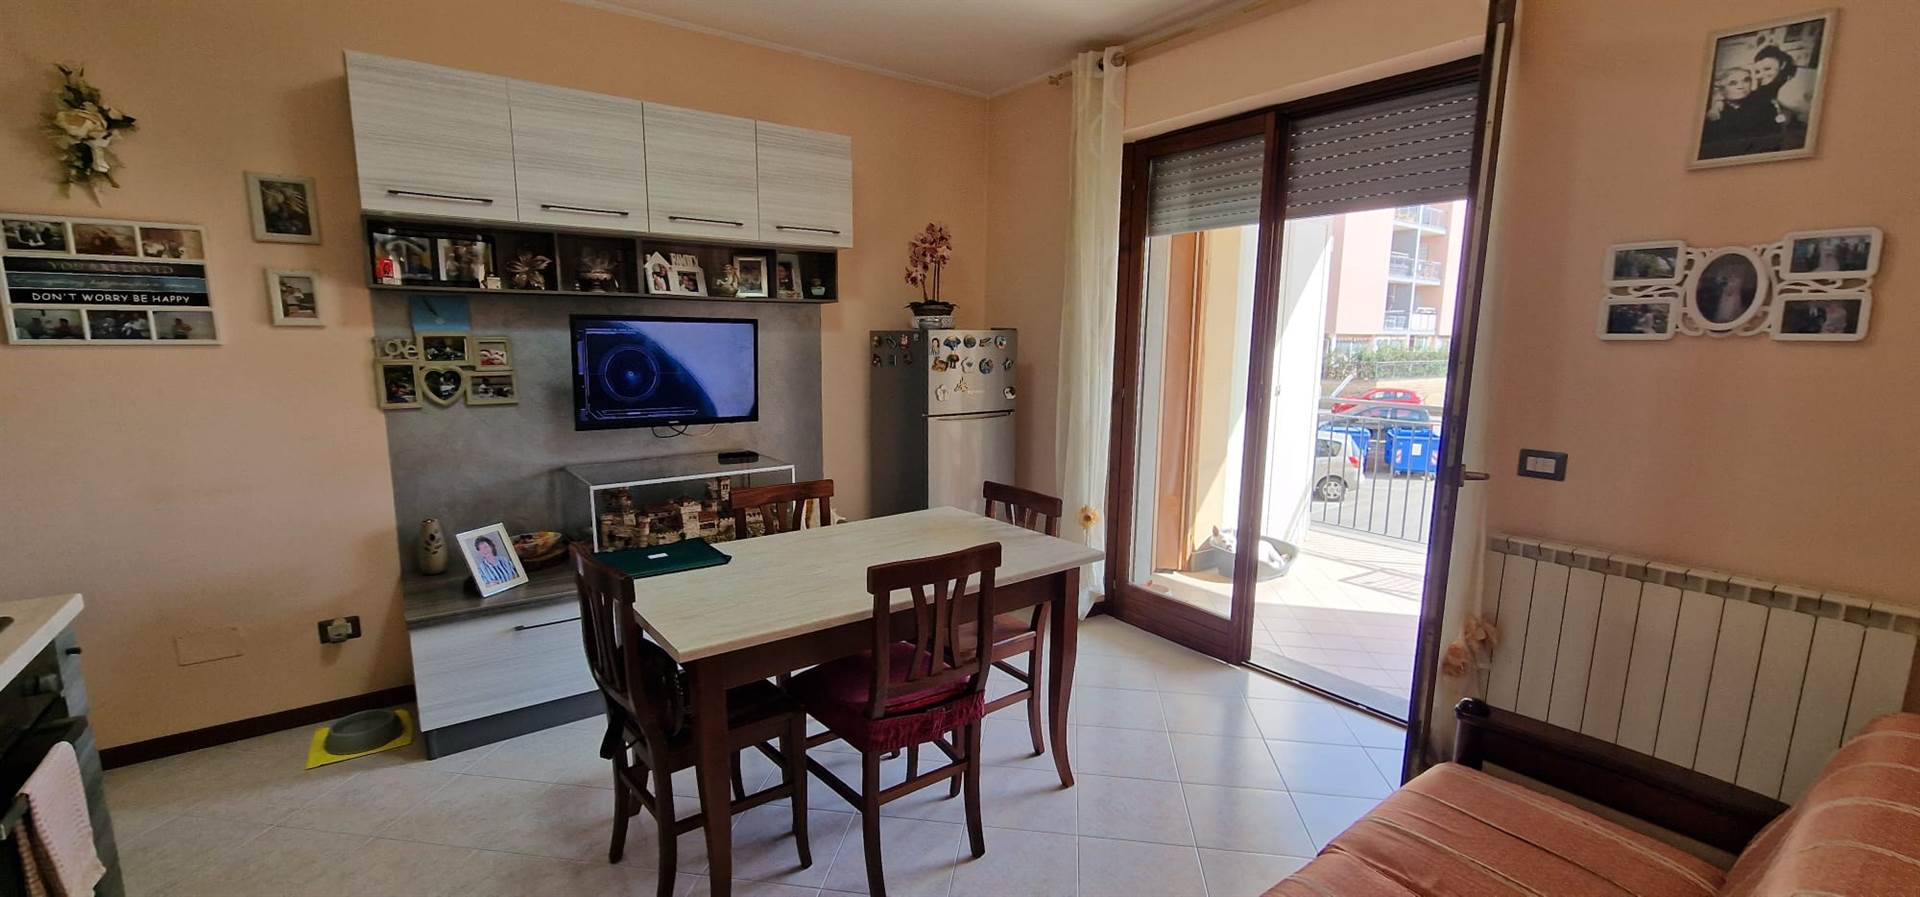 Appartamento in vendita a Tarquinia, 4 locali, prezzo € 118.000 | PortaleAgenzieImmobiliari.it